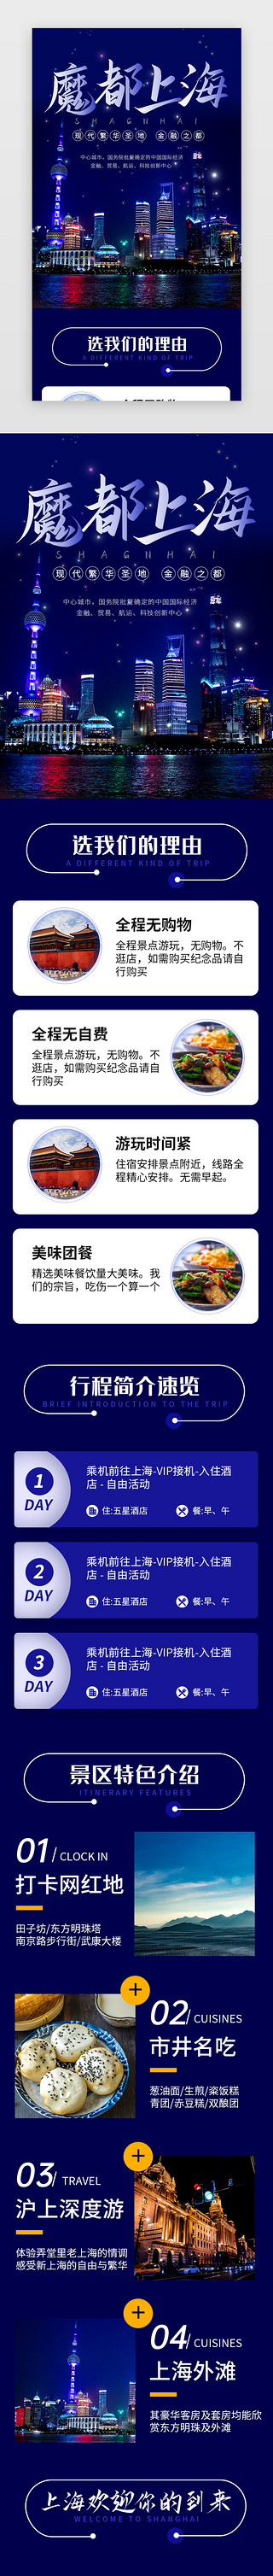 专家介绍墙UI设计素材_蓝色魔都上海旅行景点介绍H5长图海报